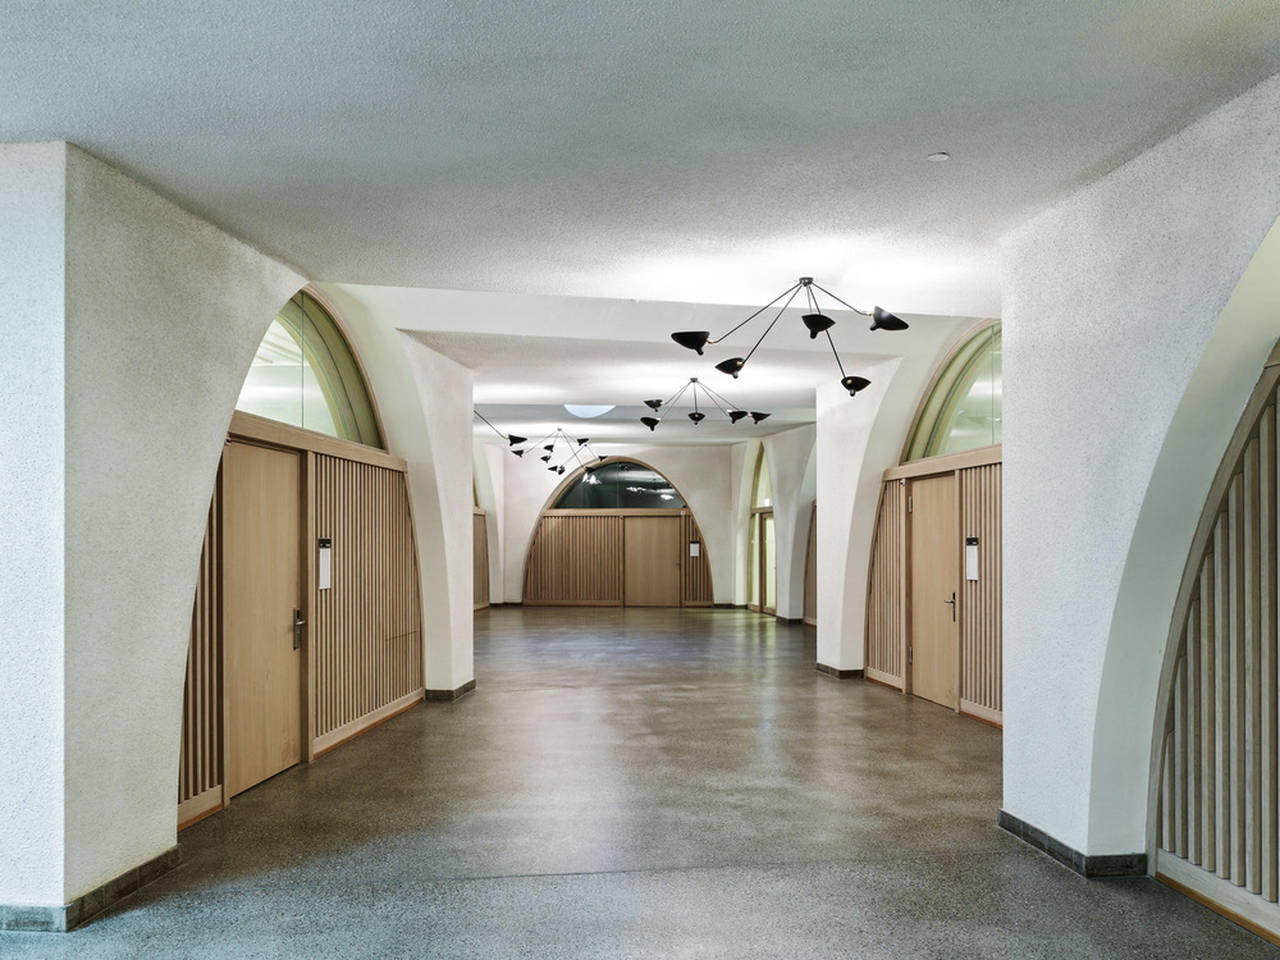 Jazz Campus Basement Floor en Basilea, Suiza diseñado por Buol&Zünd : Photo credit © Georg Aerni